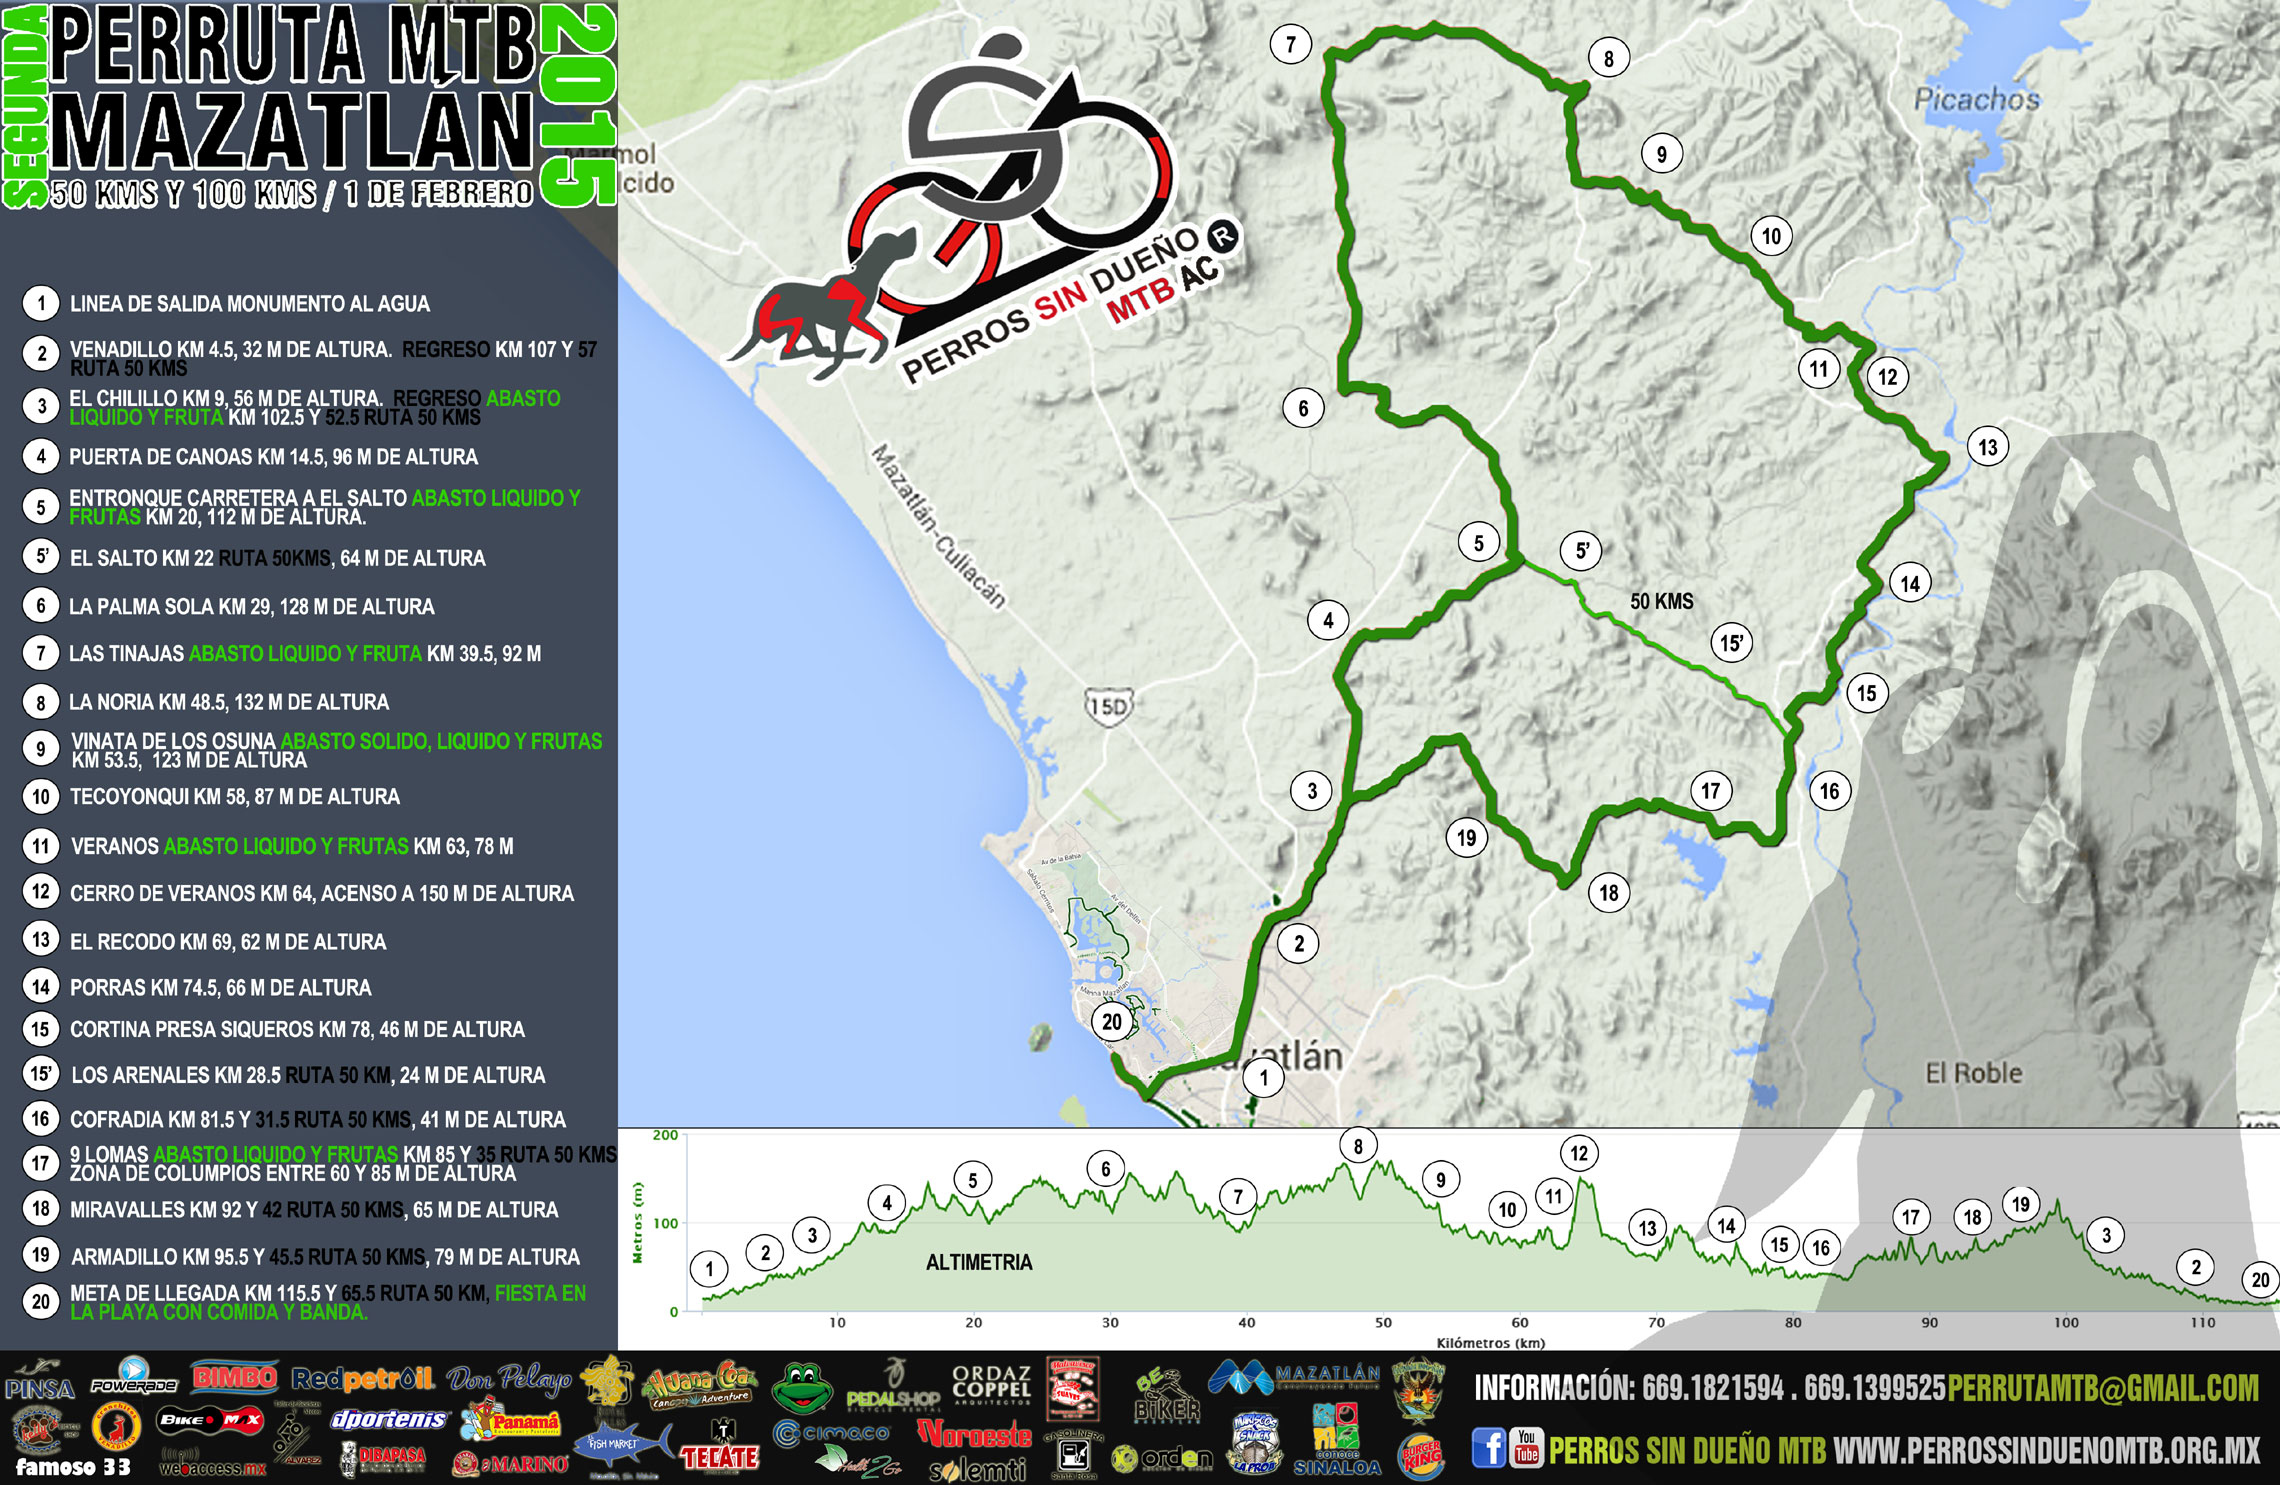 2015 Mazatlan Perruta route map